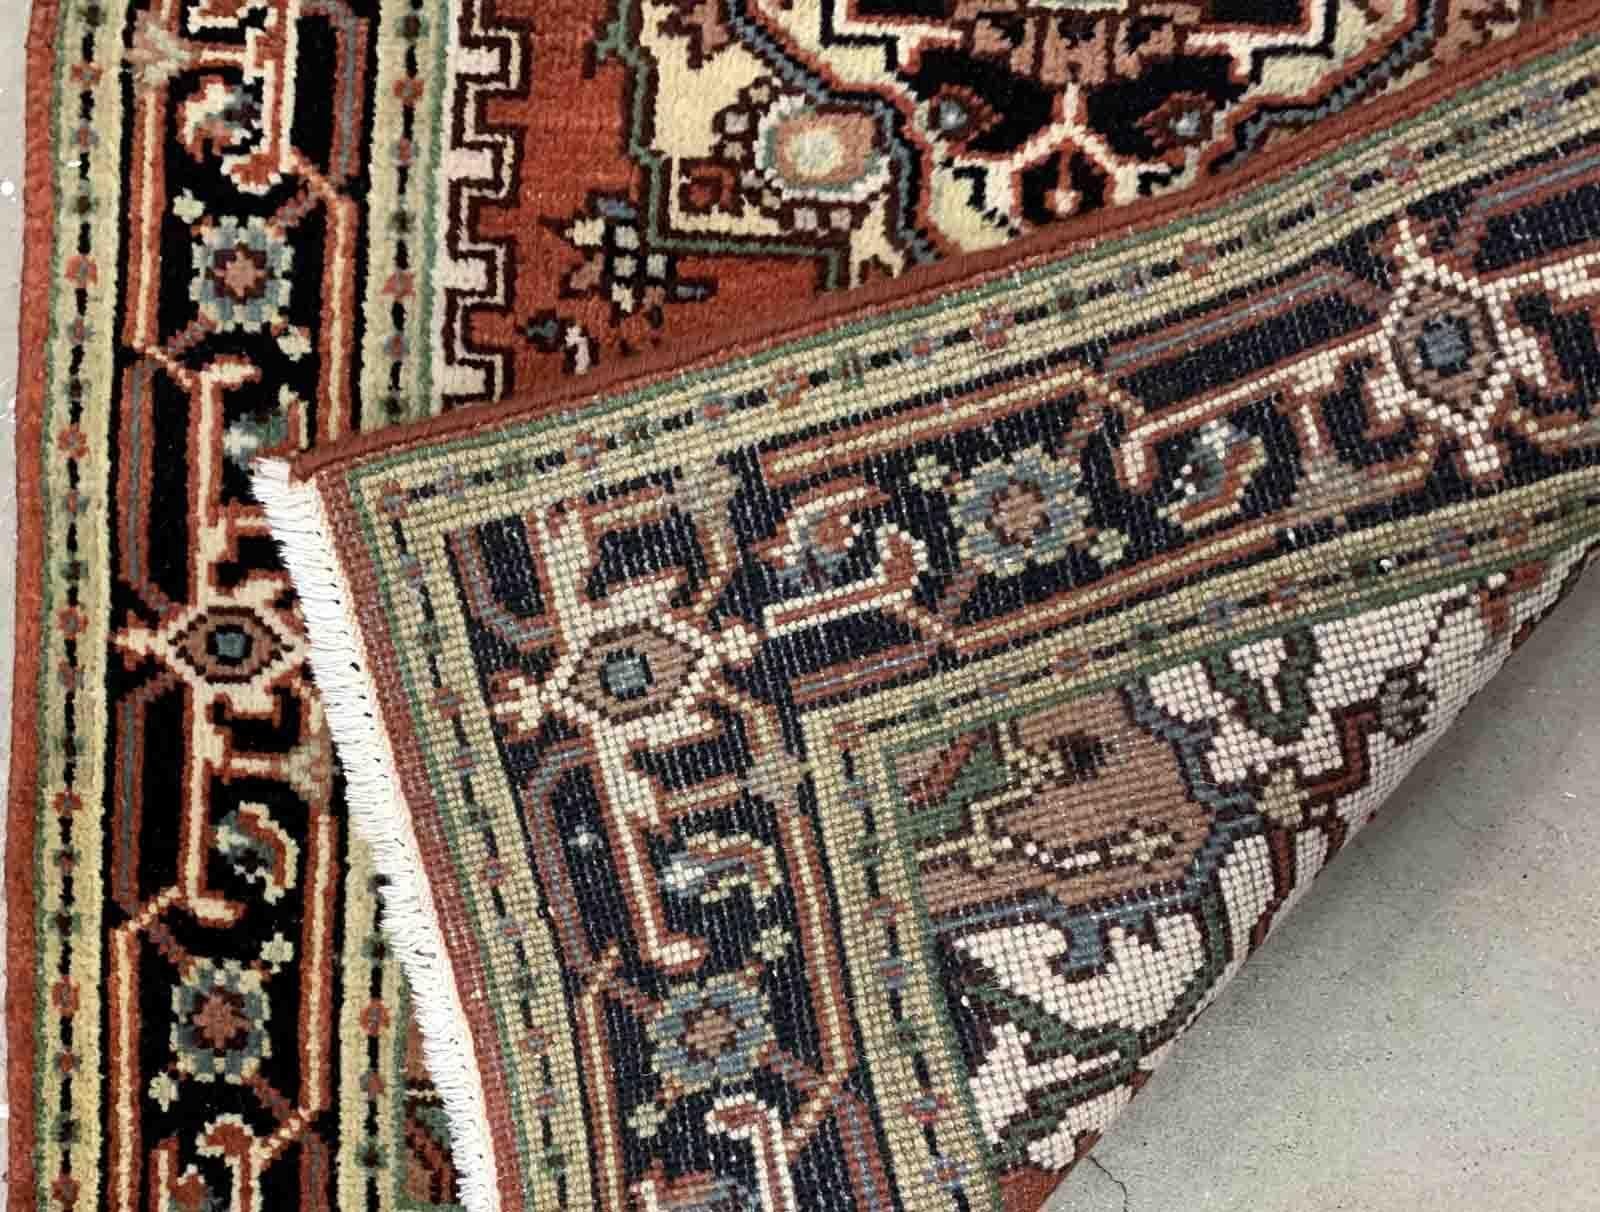 Handgefertigter Vintage-Teppich aus dem Nahen Osten mit traditionellem Design und natürlichen Farbstoffen. Der Teppich stammt aus dem Ende des 20. Jahrhunderts und ist in gutem Originalzustand.

-zustand: original gut,

-etwa: 1970er